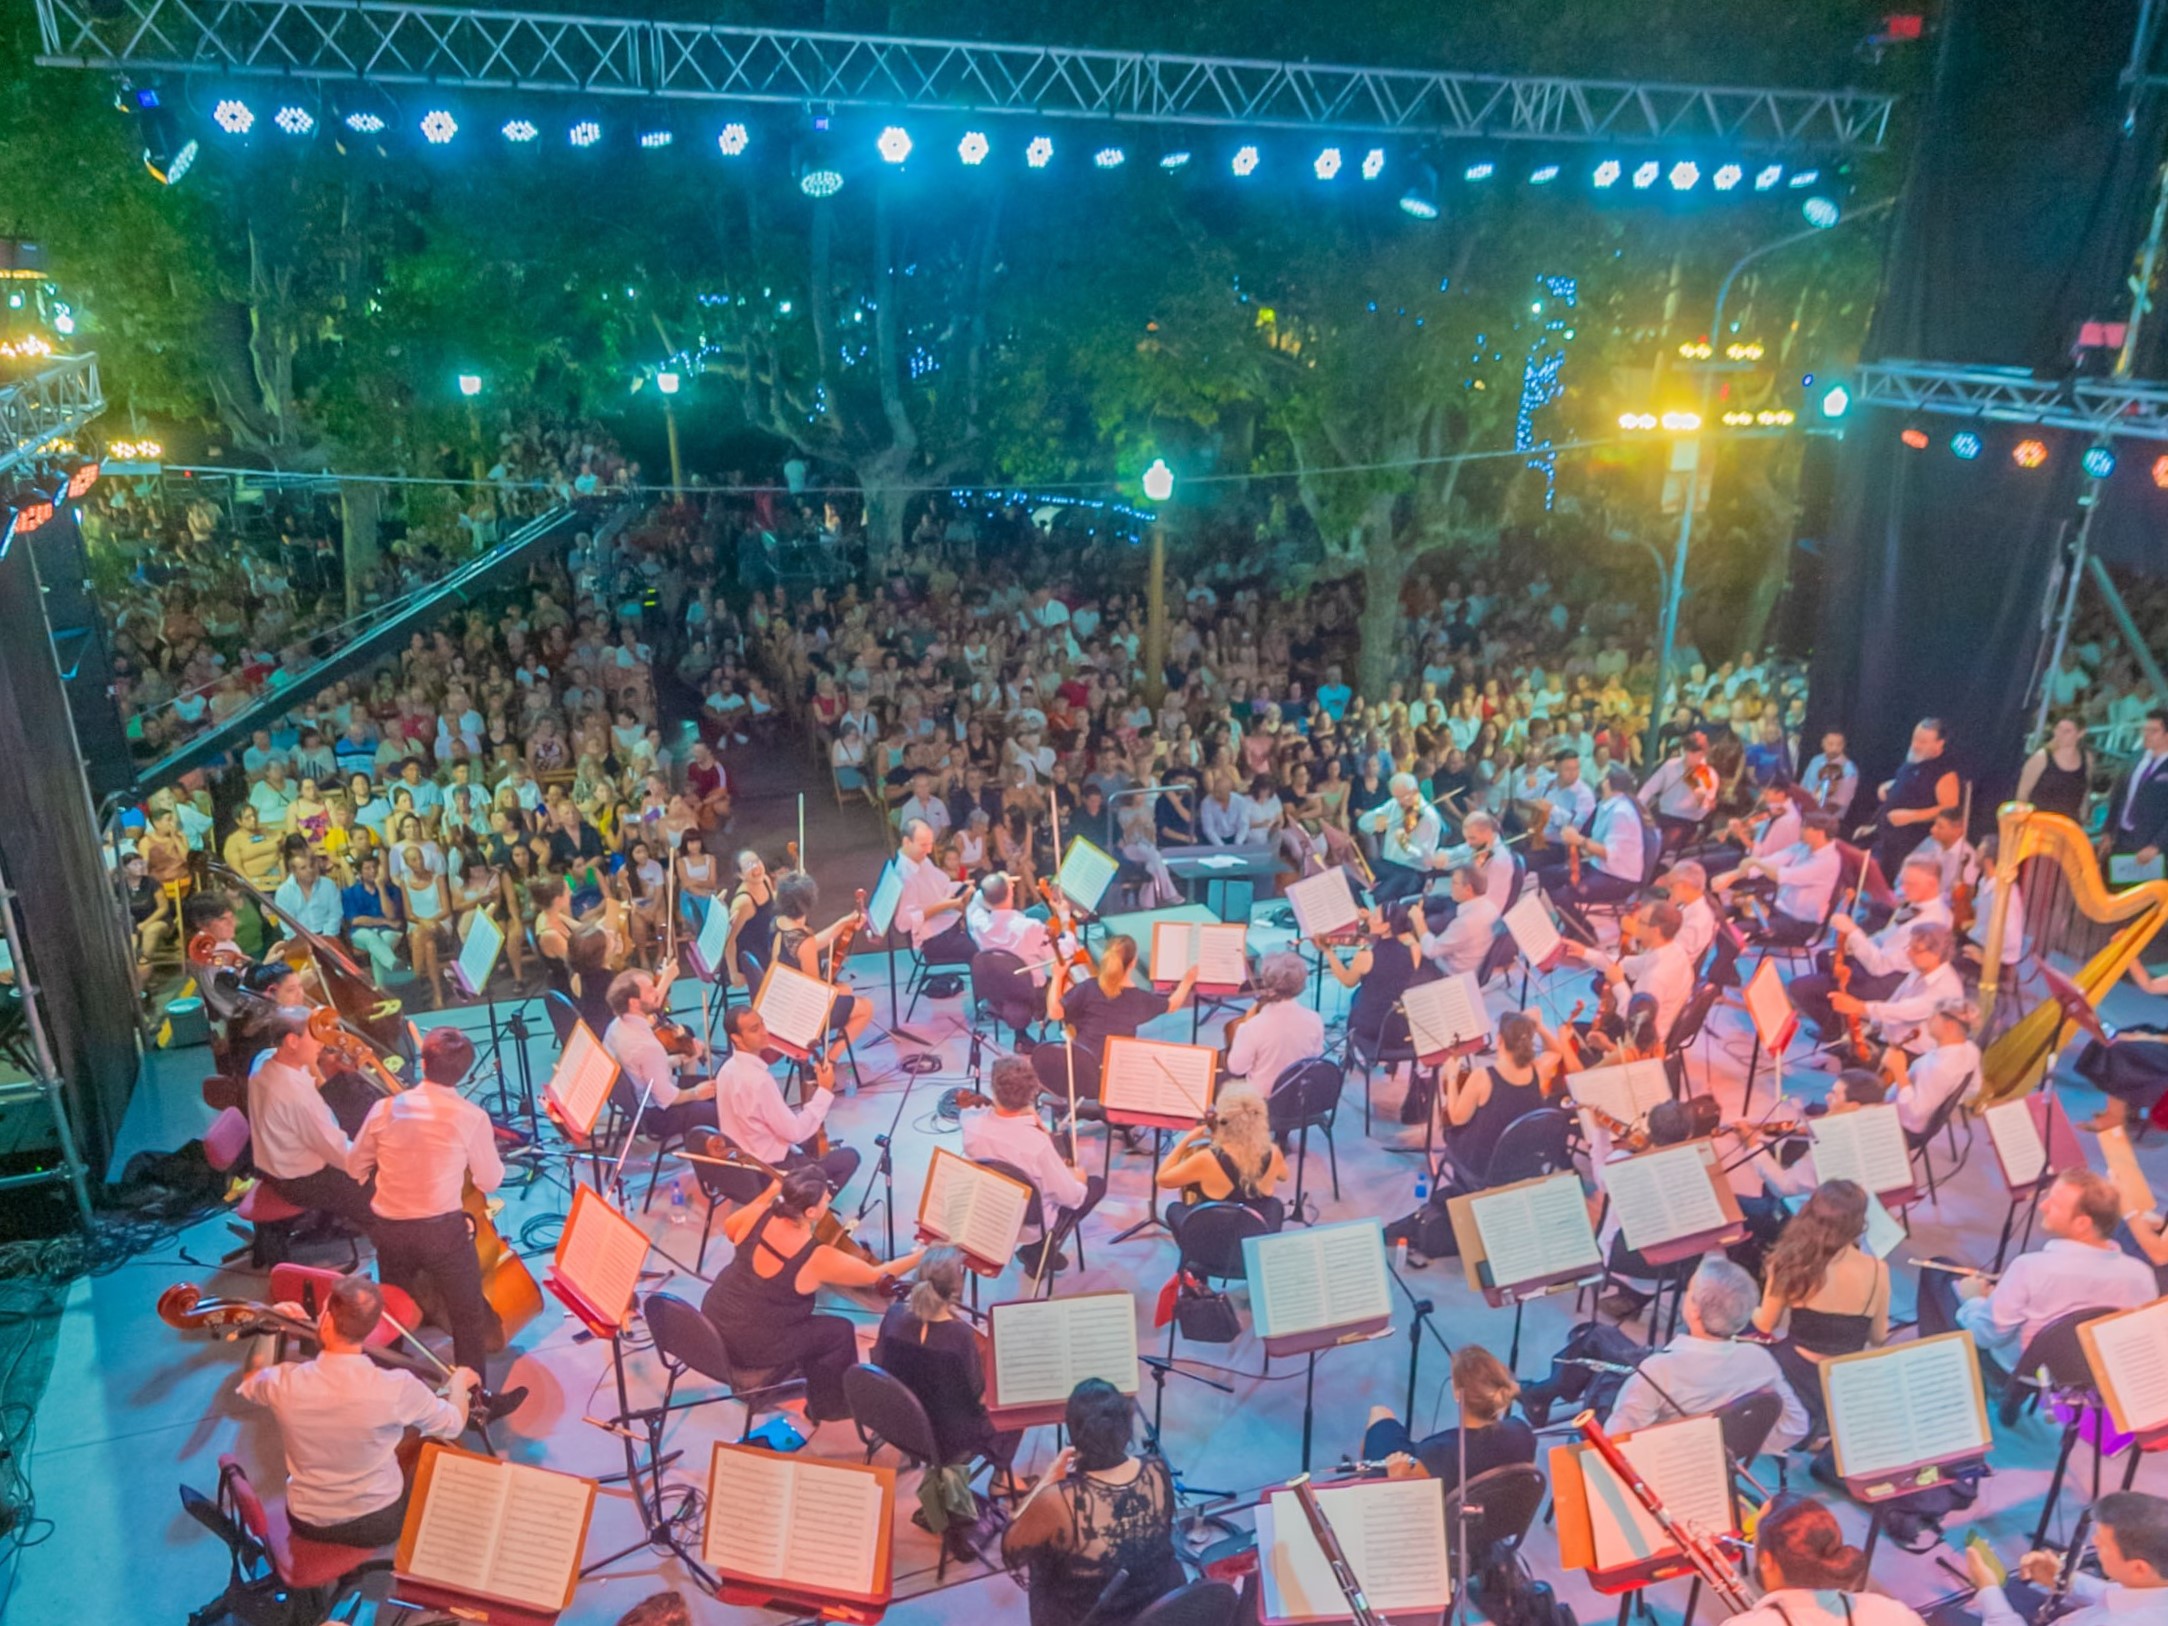 La Orquesta Sinfónica Nacional brindó un magnífico concierto para miles de sanfernandinos